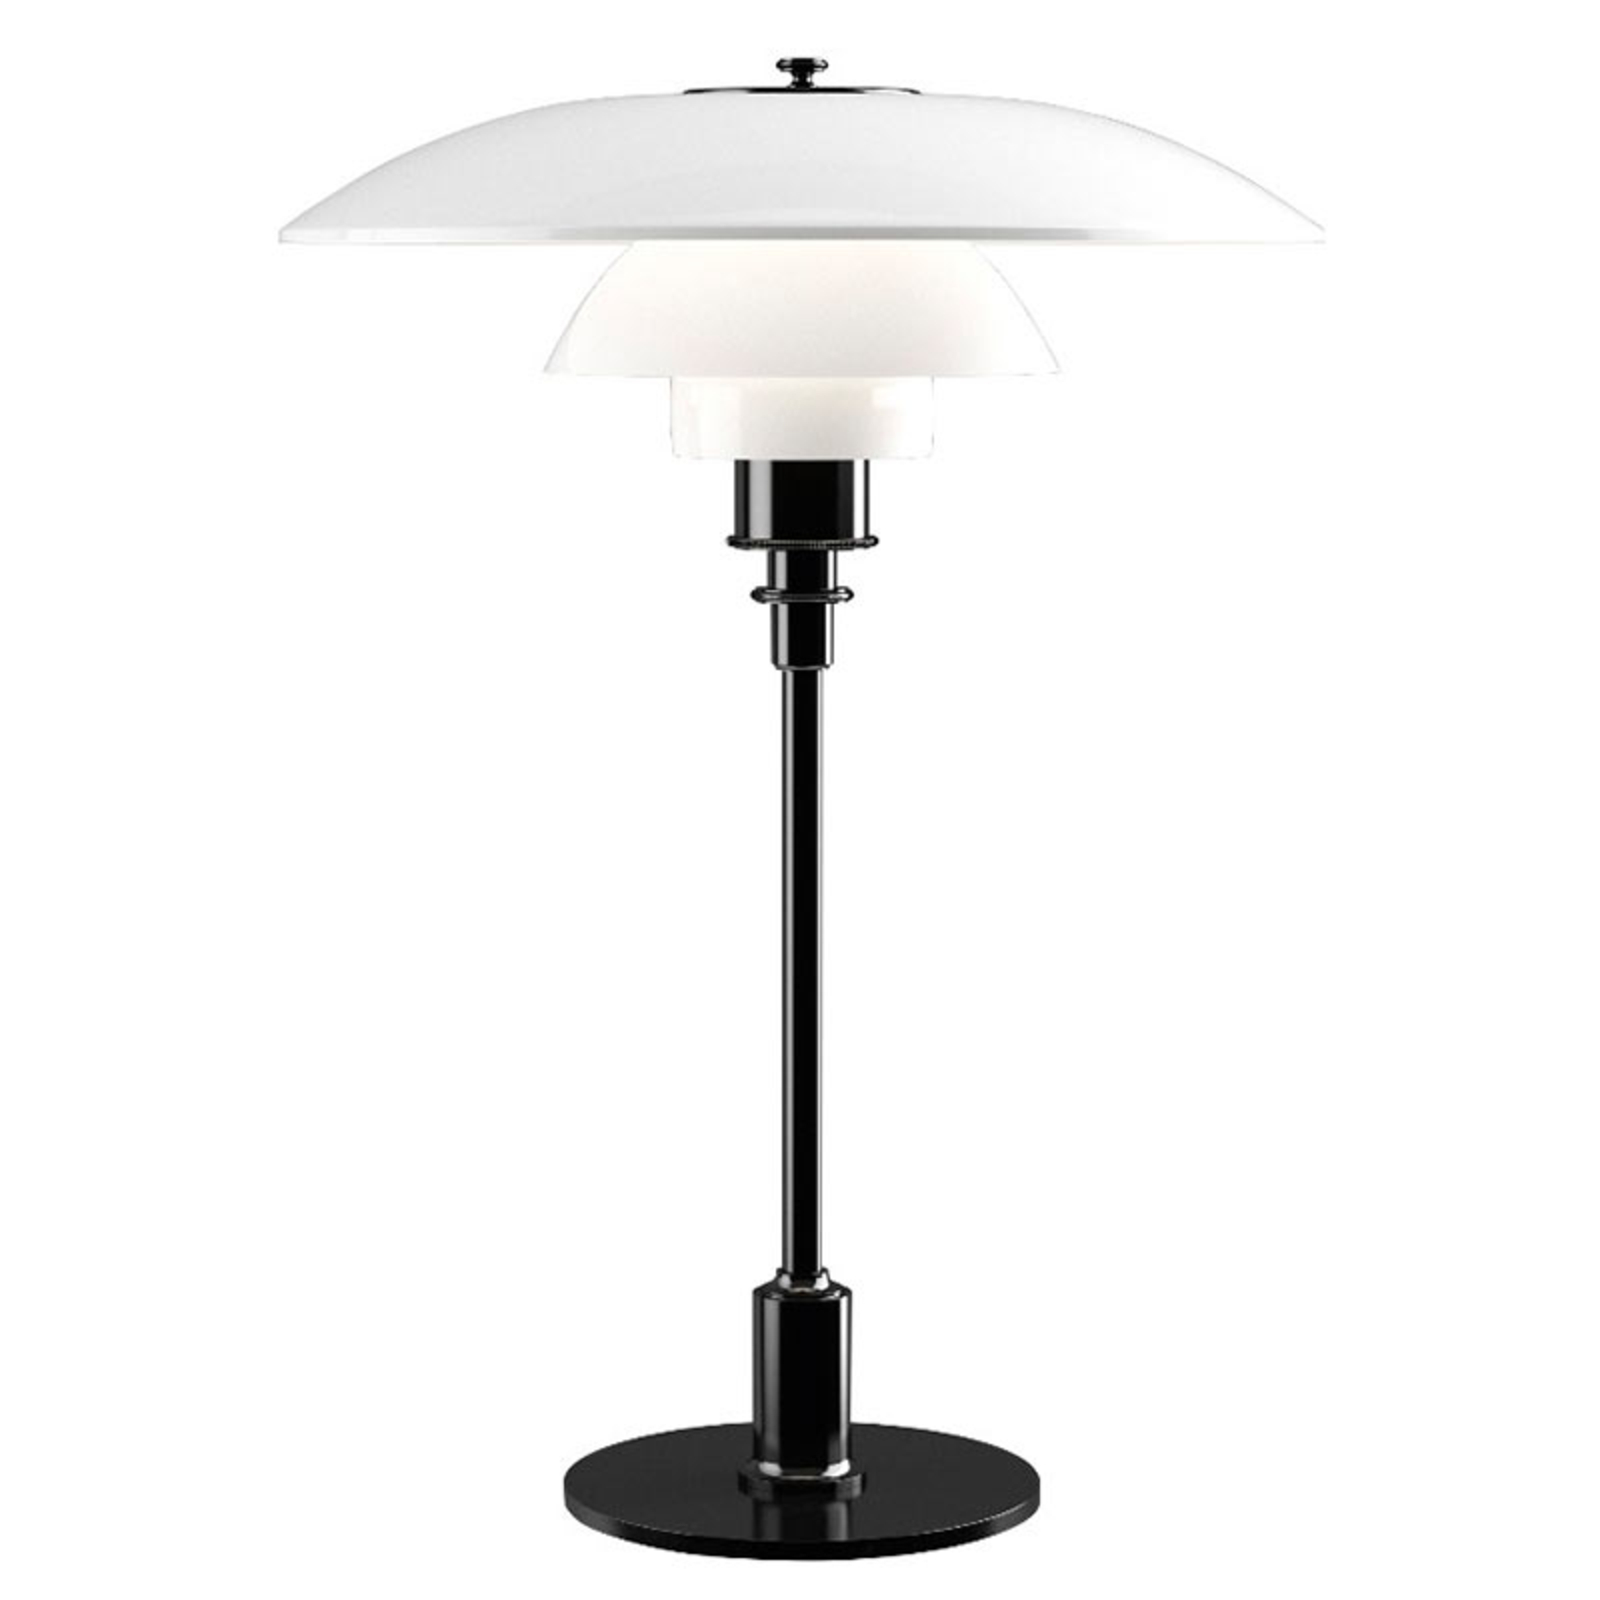 Louis Poulsen PH 3 1/2-2 1/2 table lamp black